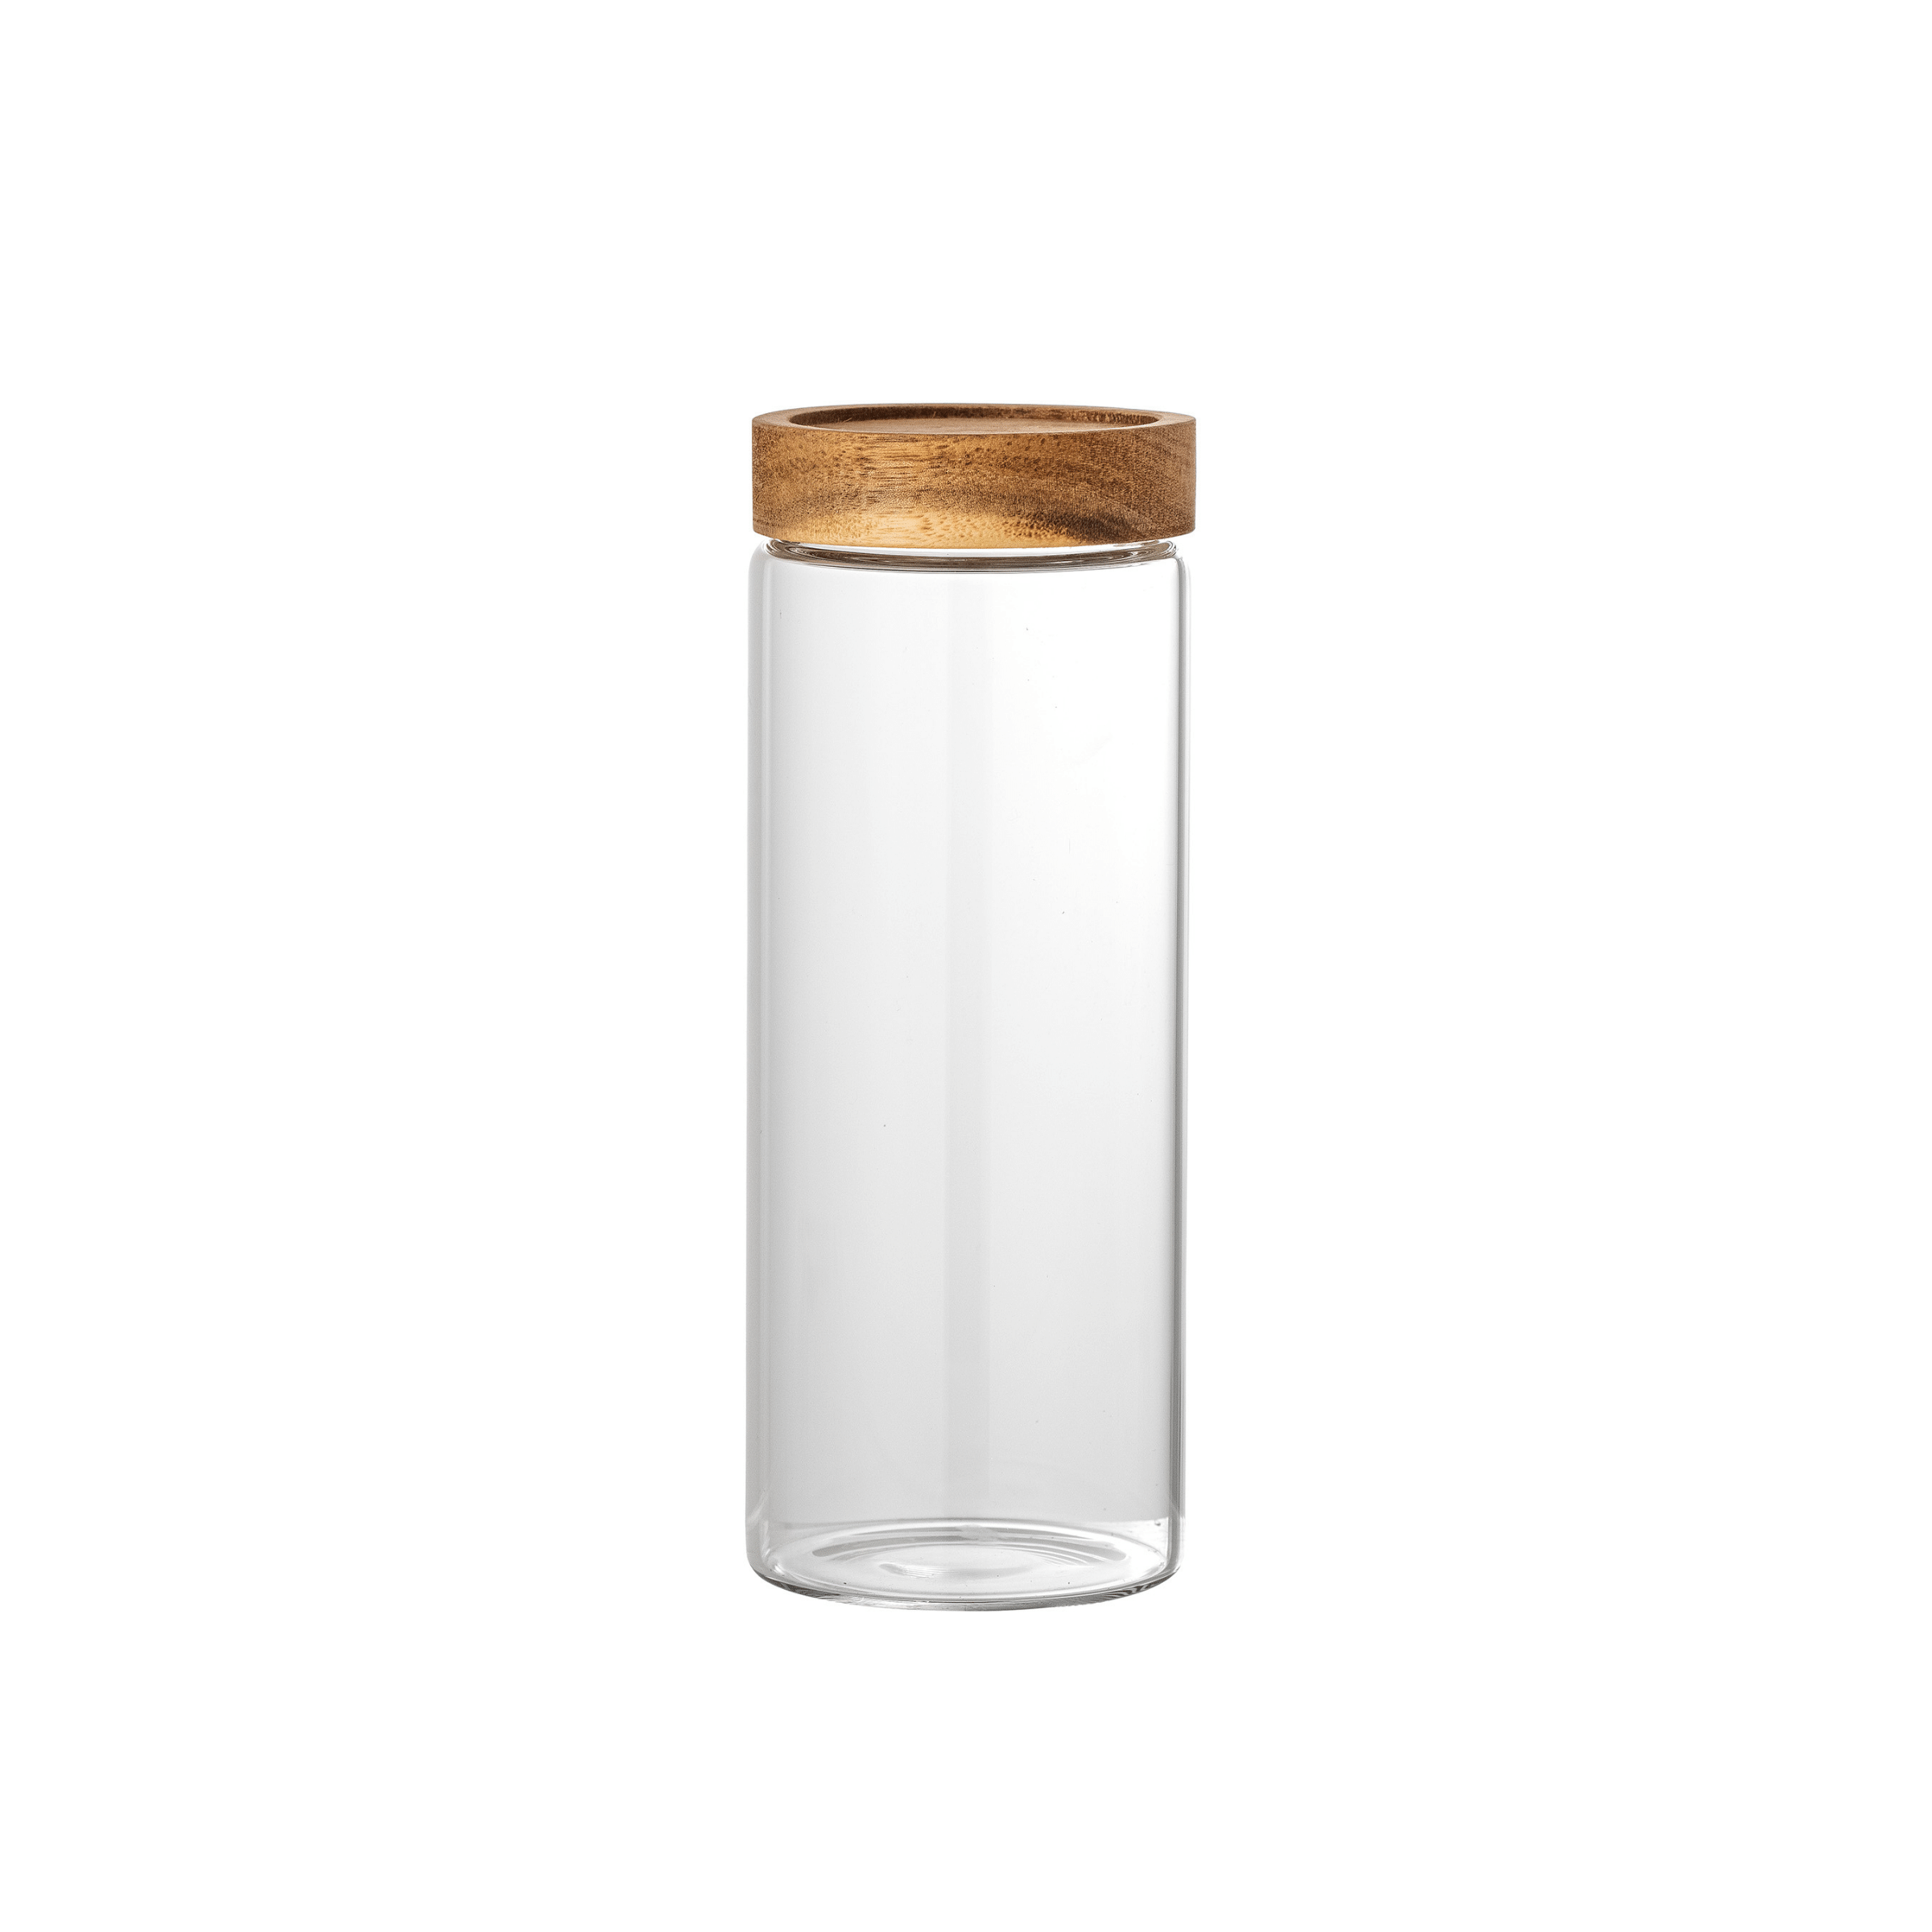 Kauna Glass Jar with Lid - Large